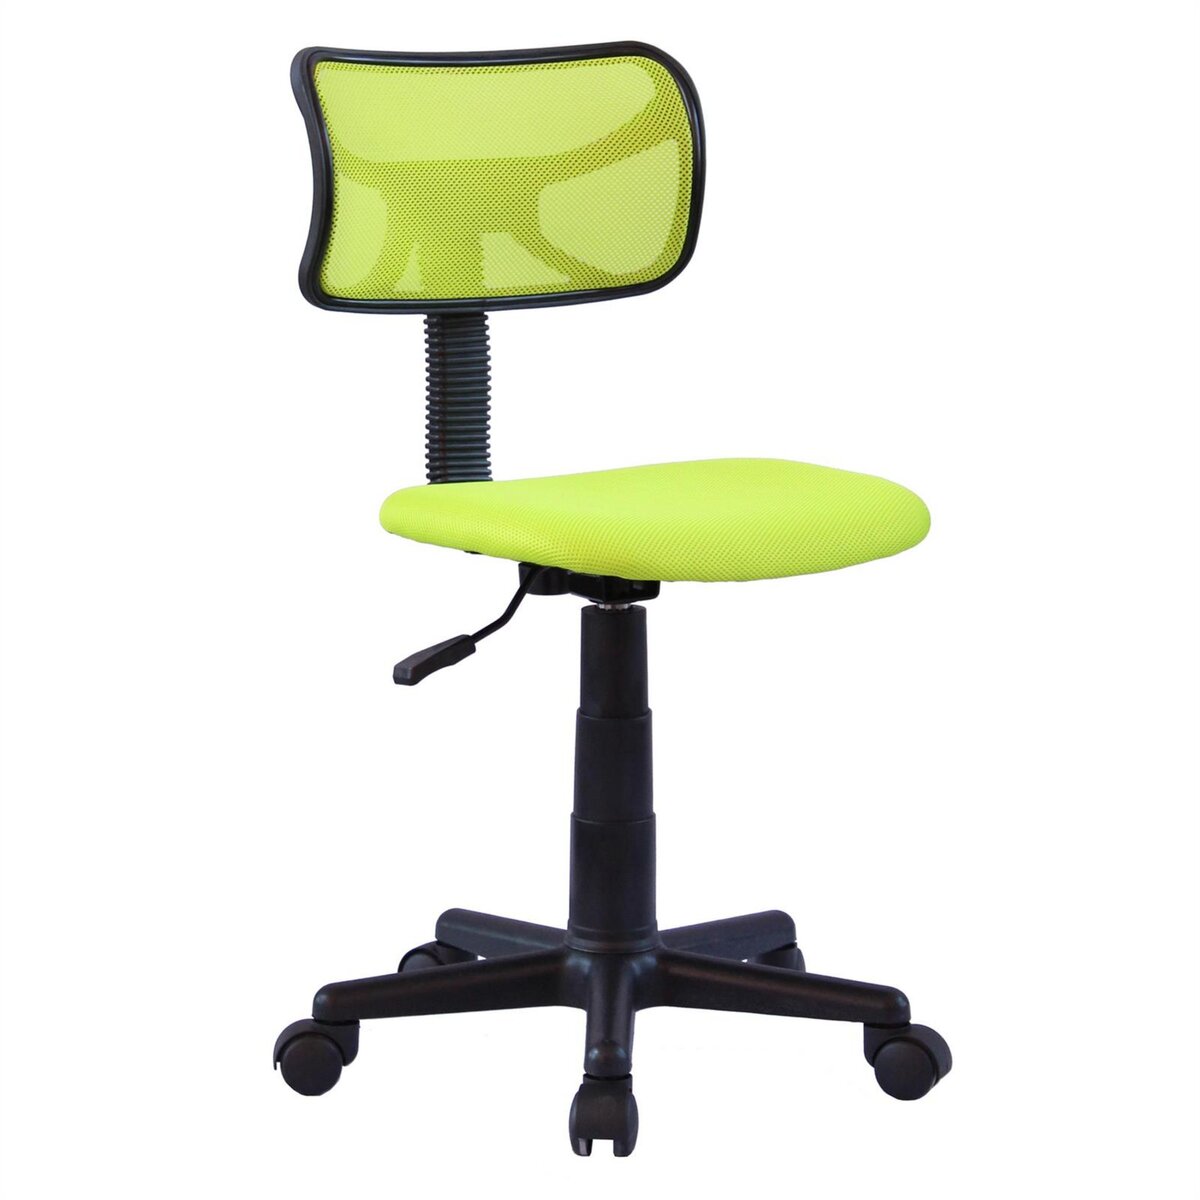 IDIMEX Chaise de bureau pour enfant MILAN fauteuil pivotant et ergonomique, siège à roulettes avec hauteur réglable, mesh vert